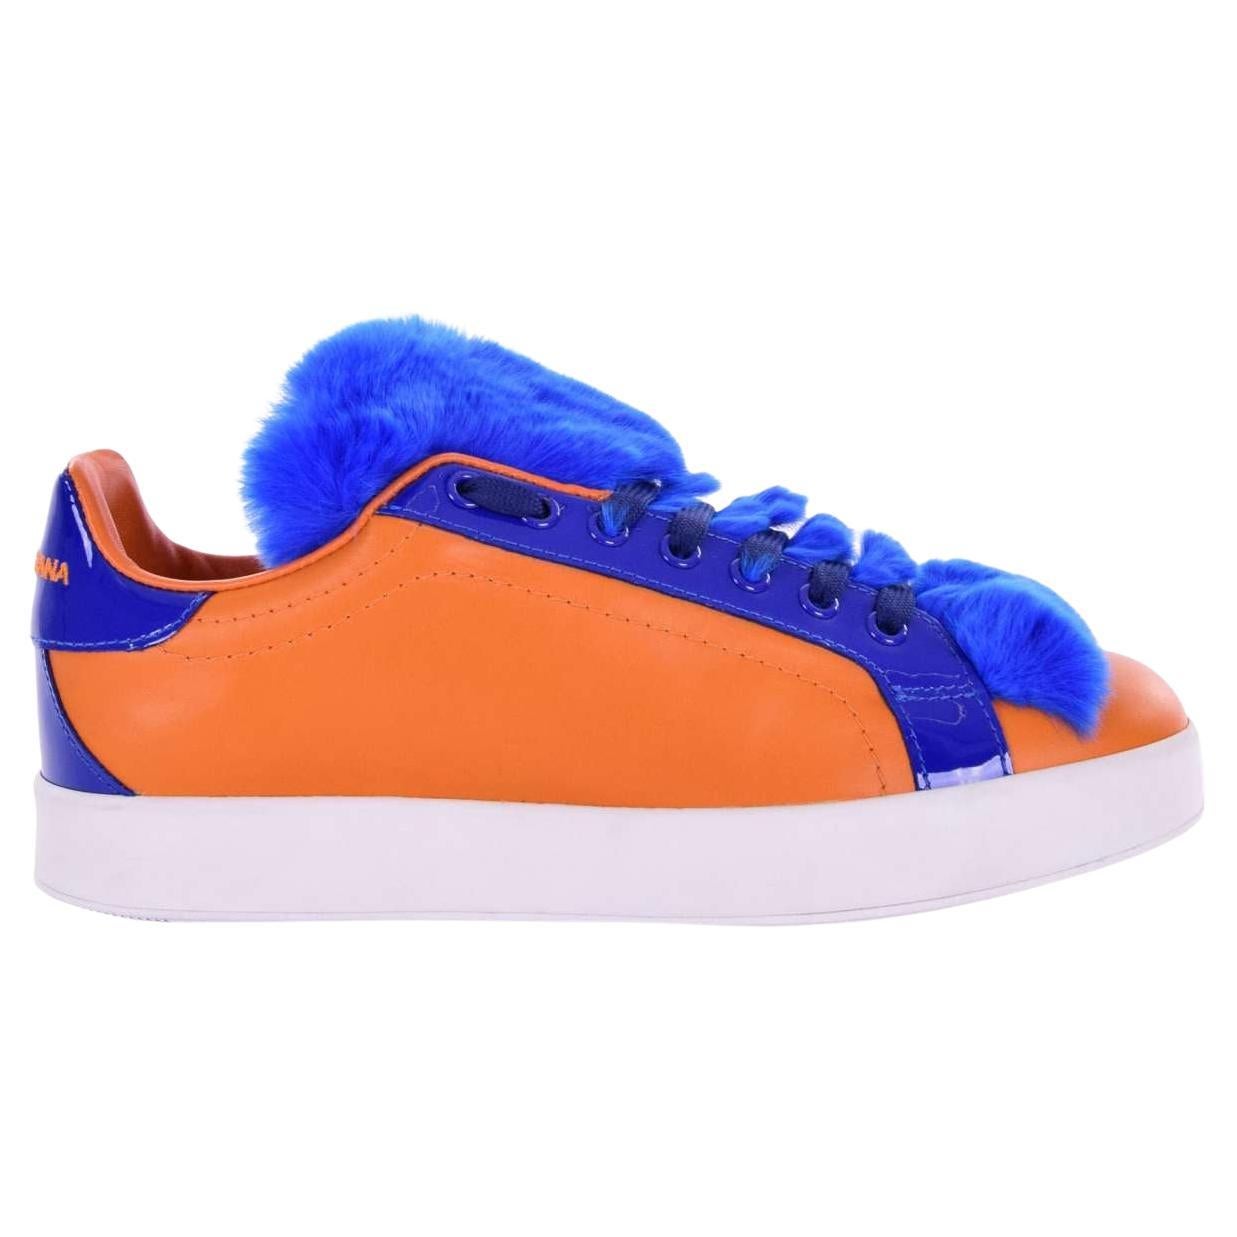 Dolce & Gabbana - Fur and Leather Sneaker PORTOFINO Orange Blue EUR 37 For Sale